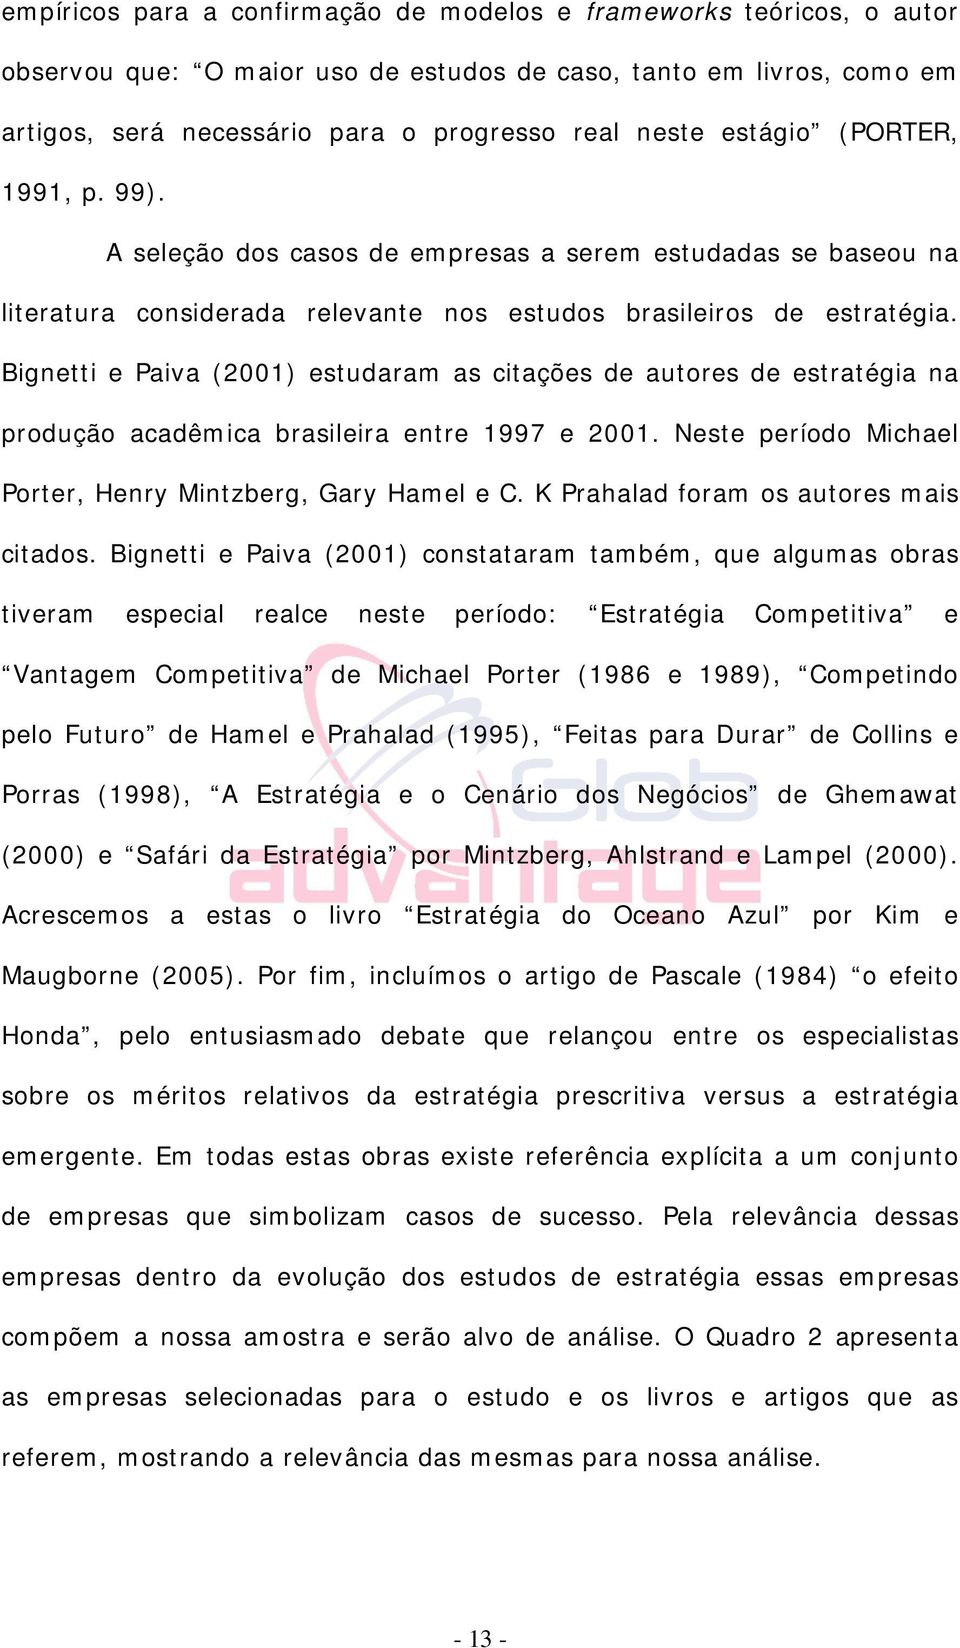 Bignetti e Paiva (2001) estudaram as citações de autores de estratégia na produção acadêmica brasileira entre 1997 e 2001. Neste período Michael Porter, Henry Mintzberg, Gary Hamel e C.